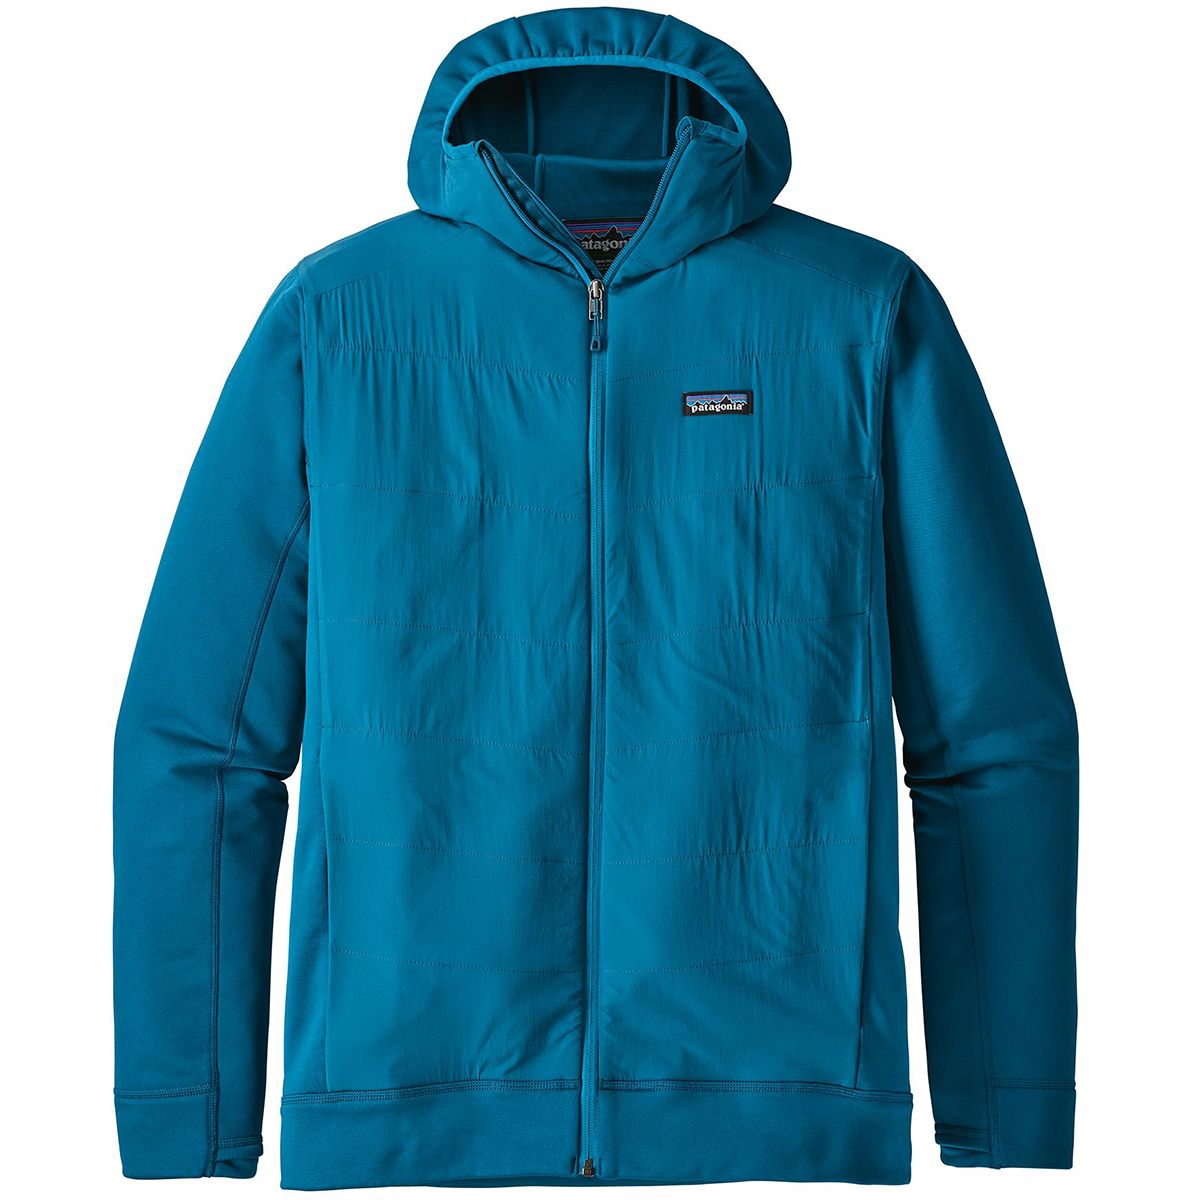 Patagonia Crosstrek Hybrid Hooded Fleece Jacket - Men's - Clothing